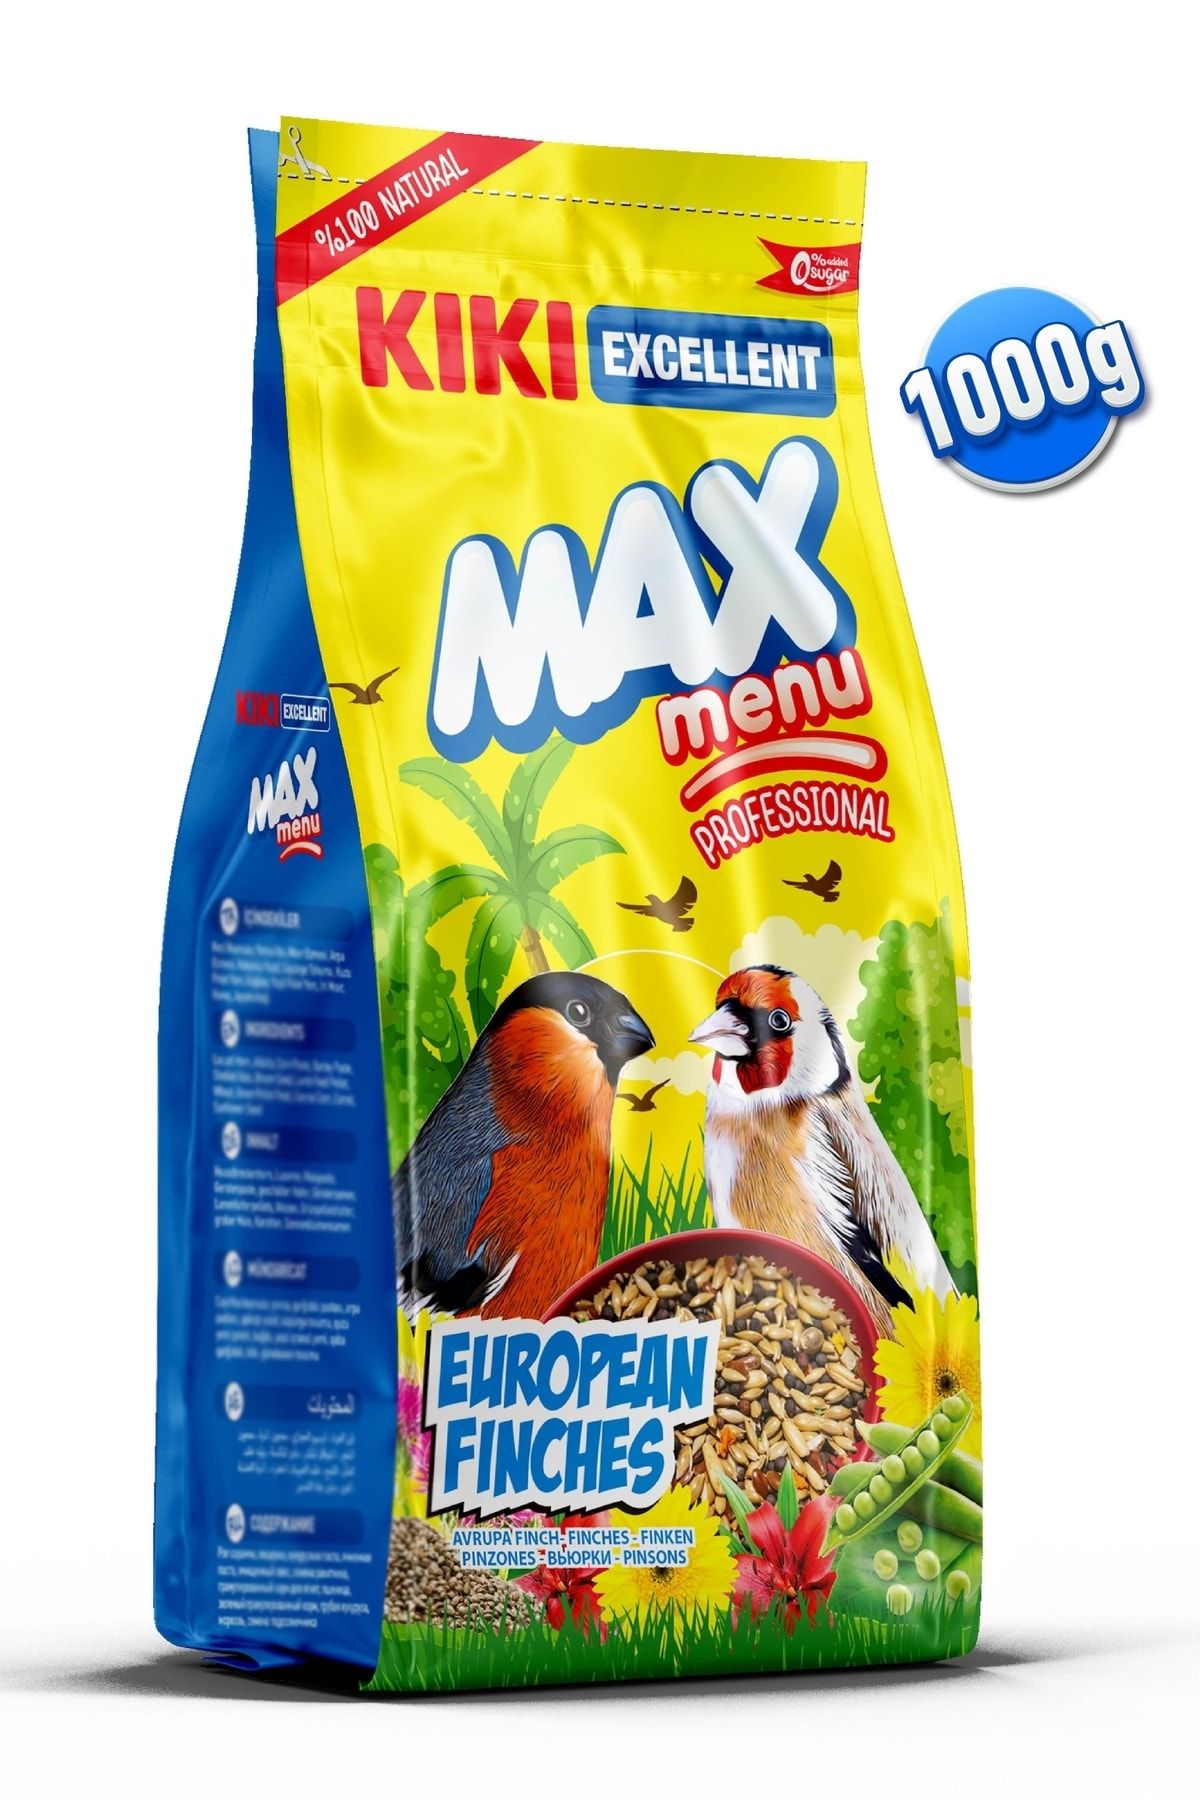 Kiki Excellent Kuş Max Menu European Finches Avrupalı Finç Yemi 1000 Gr. Kb311